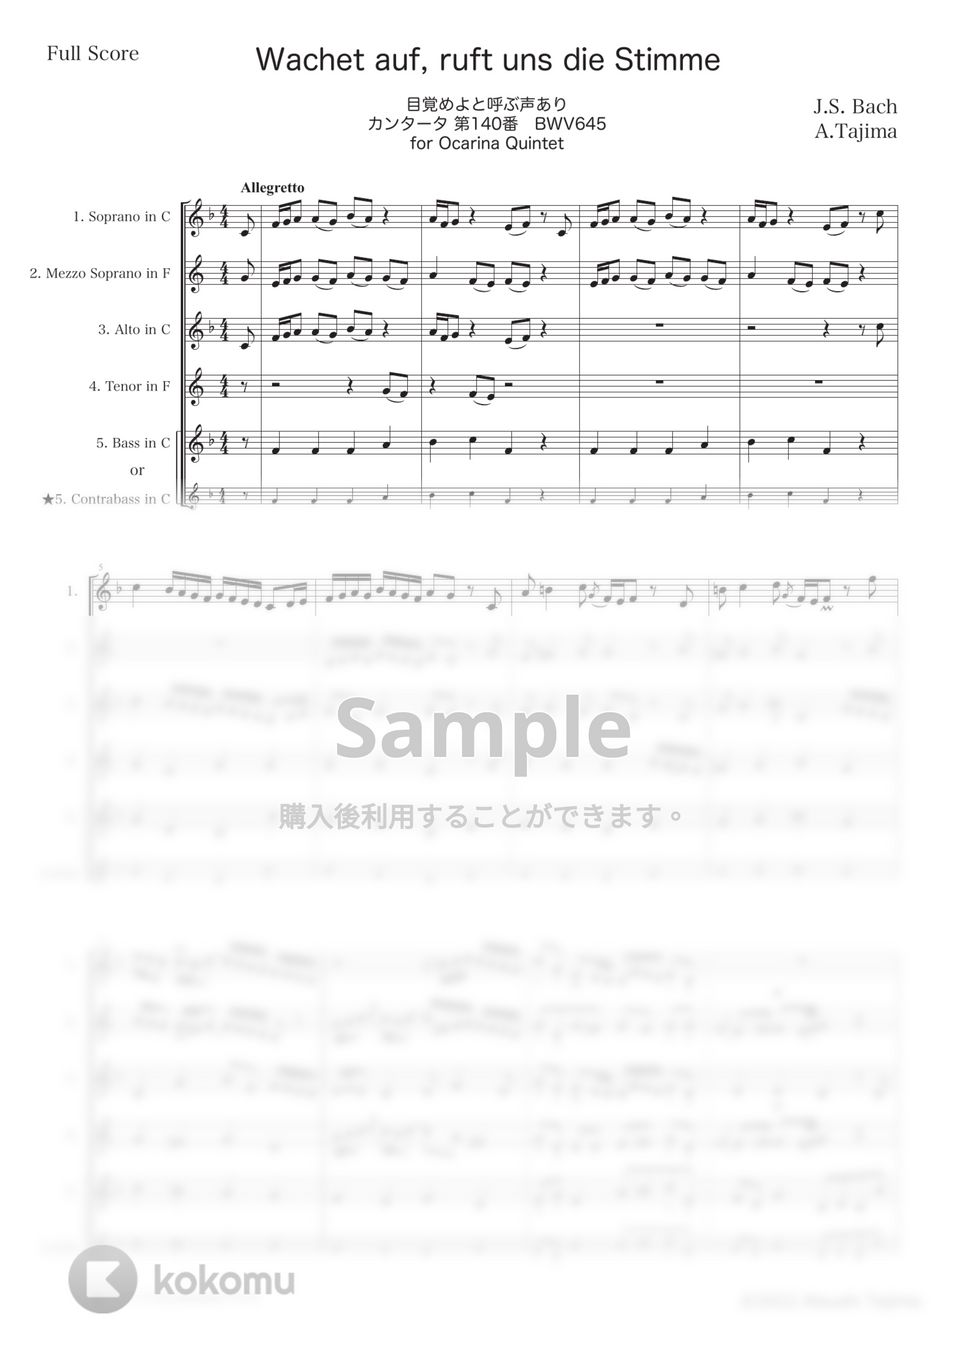 J.S. Bach - 目覚めよと呼ぶ声あり (オカリナ五重奏) by 田島篤